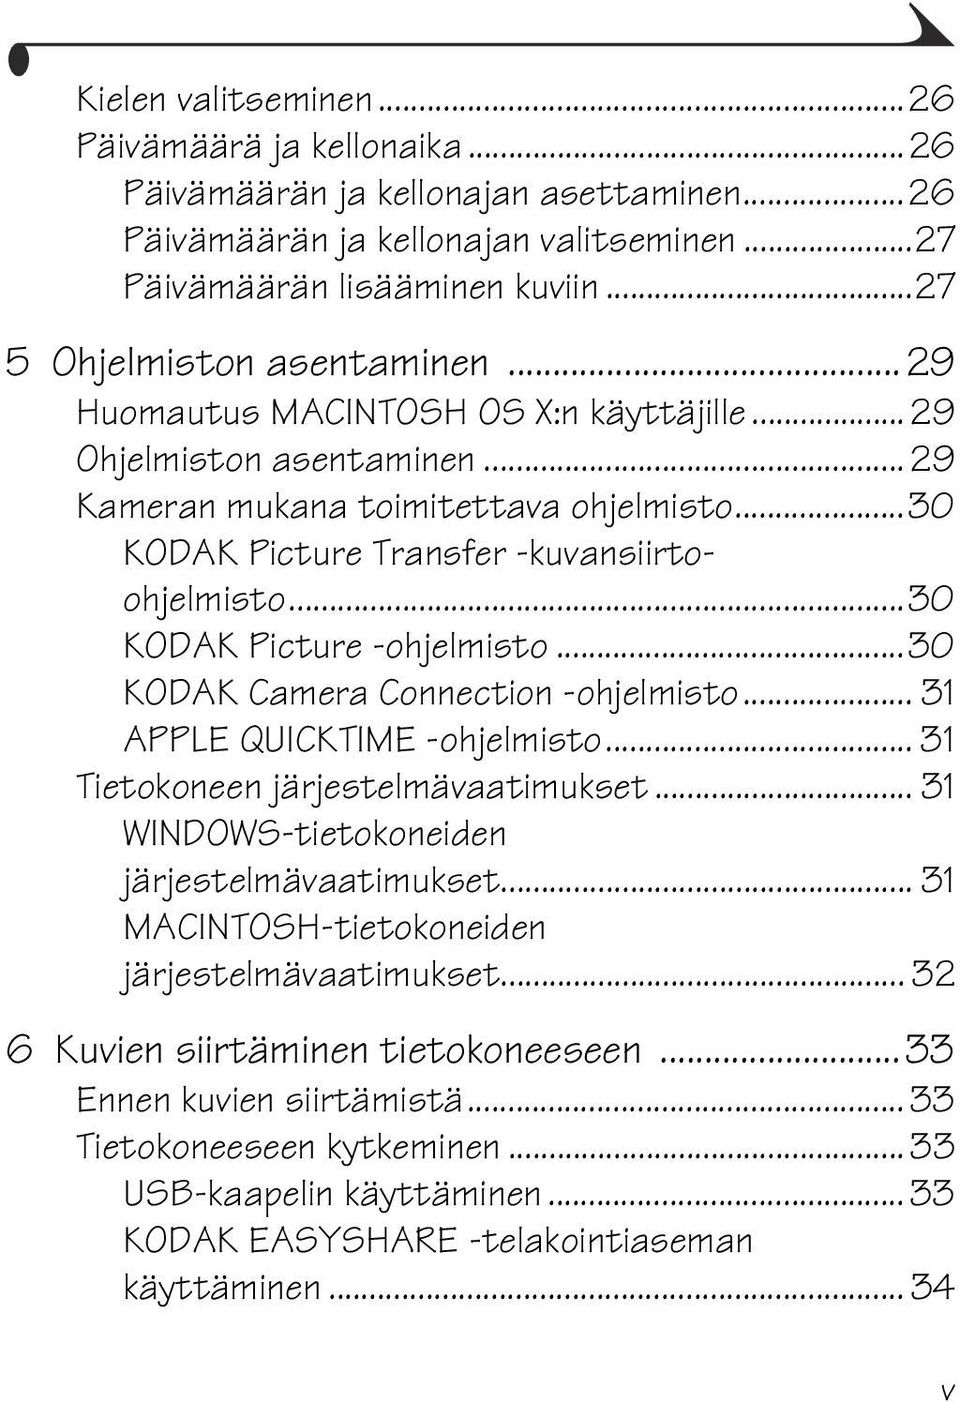 ..30 KODAK Picture -ohjelmisto...30 KODAK Camera Connection -ohjelmisto... 31 APPLE QUICKTIME -ohjelmisto... 31 Tietokoneen järjestelmävaatimukset... 31 WINDOWS-tietokoneiden järjestelmävaatimukset.